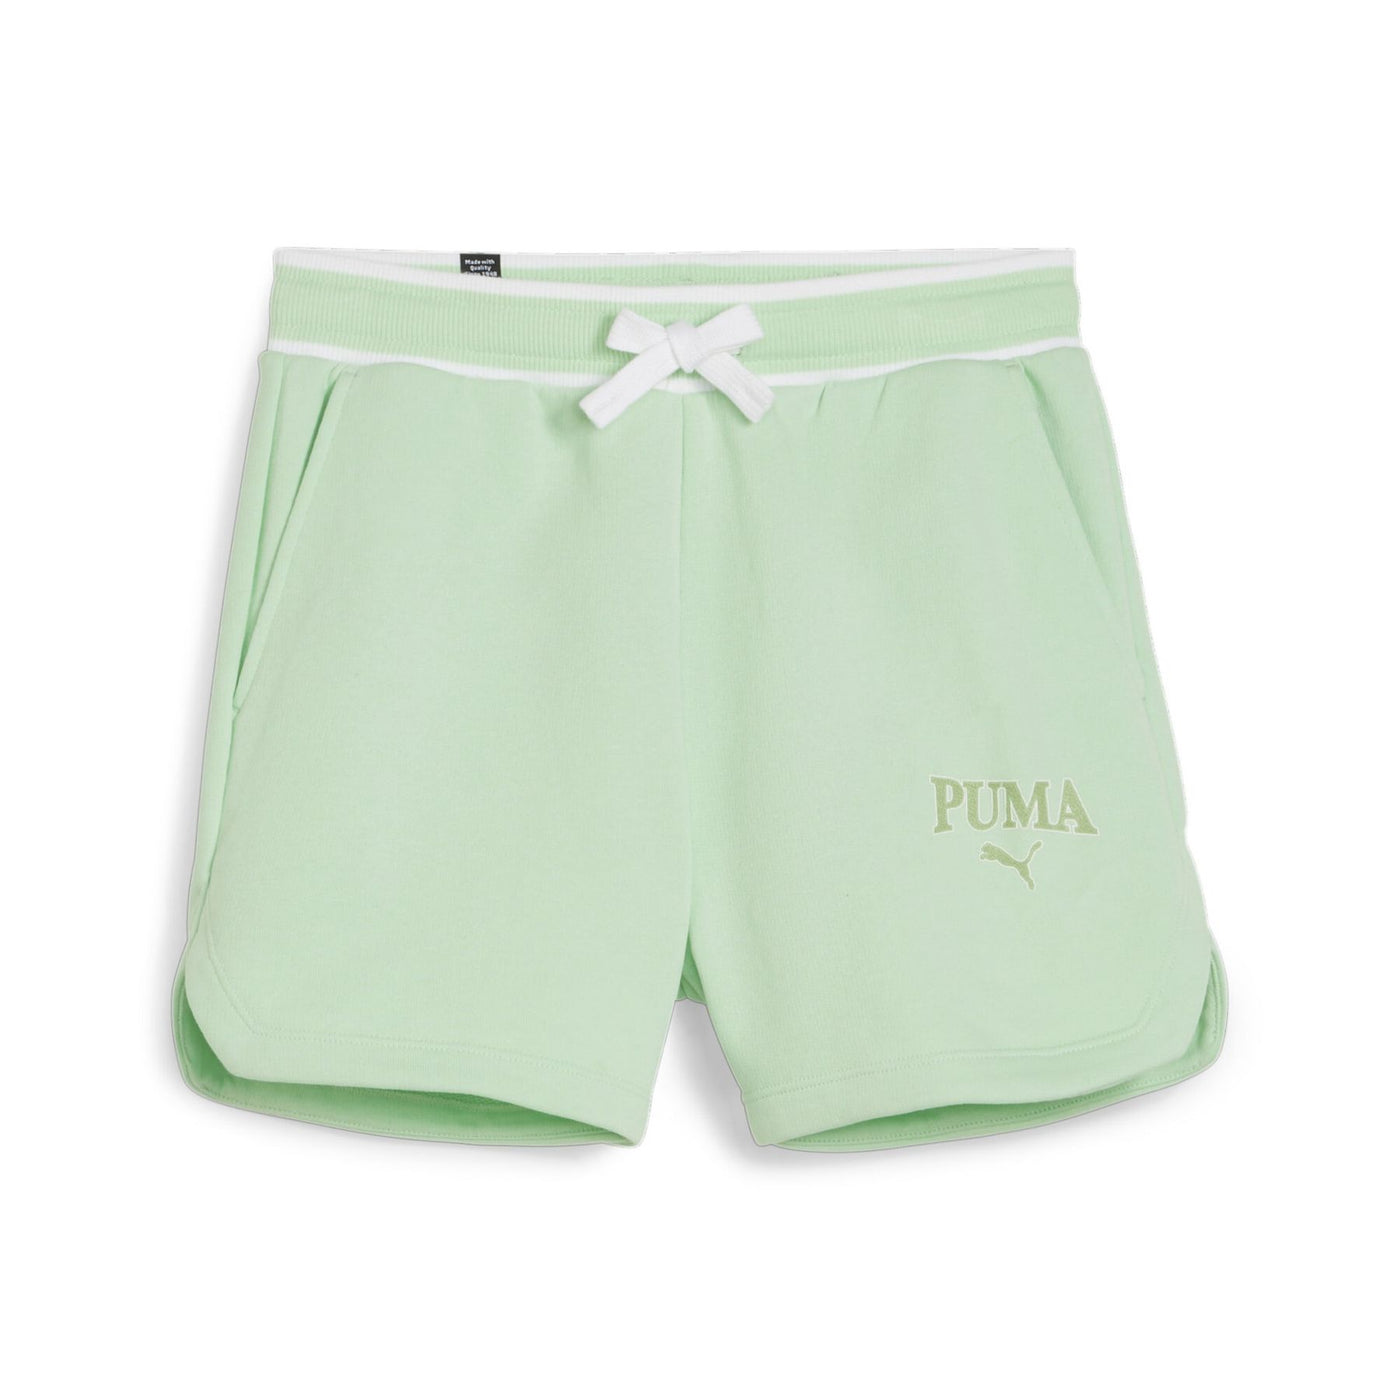 679400-88 - Shorts - Puma